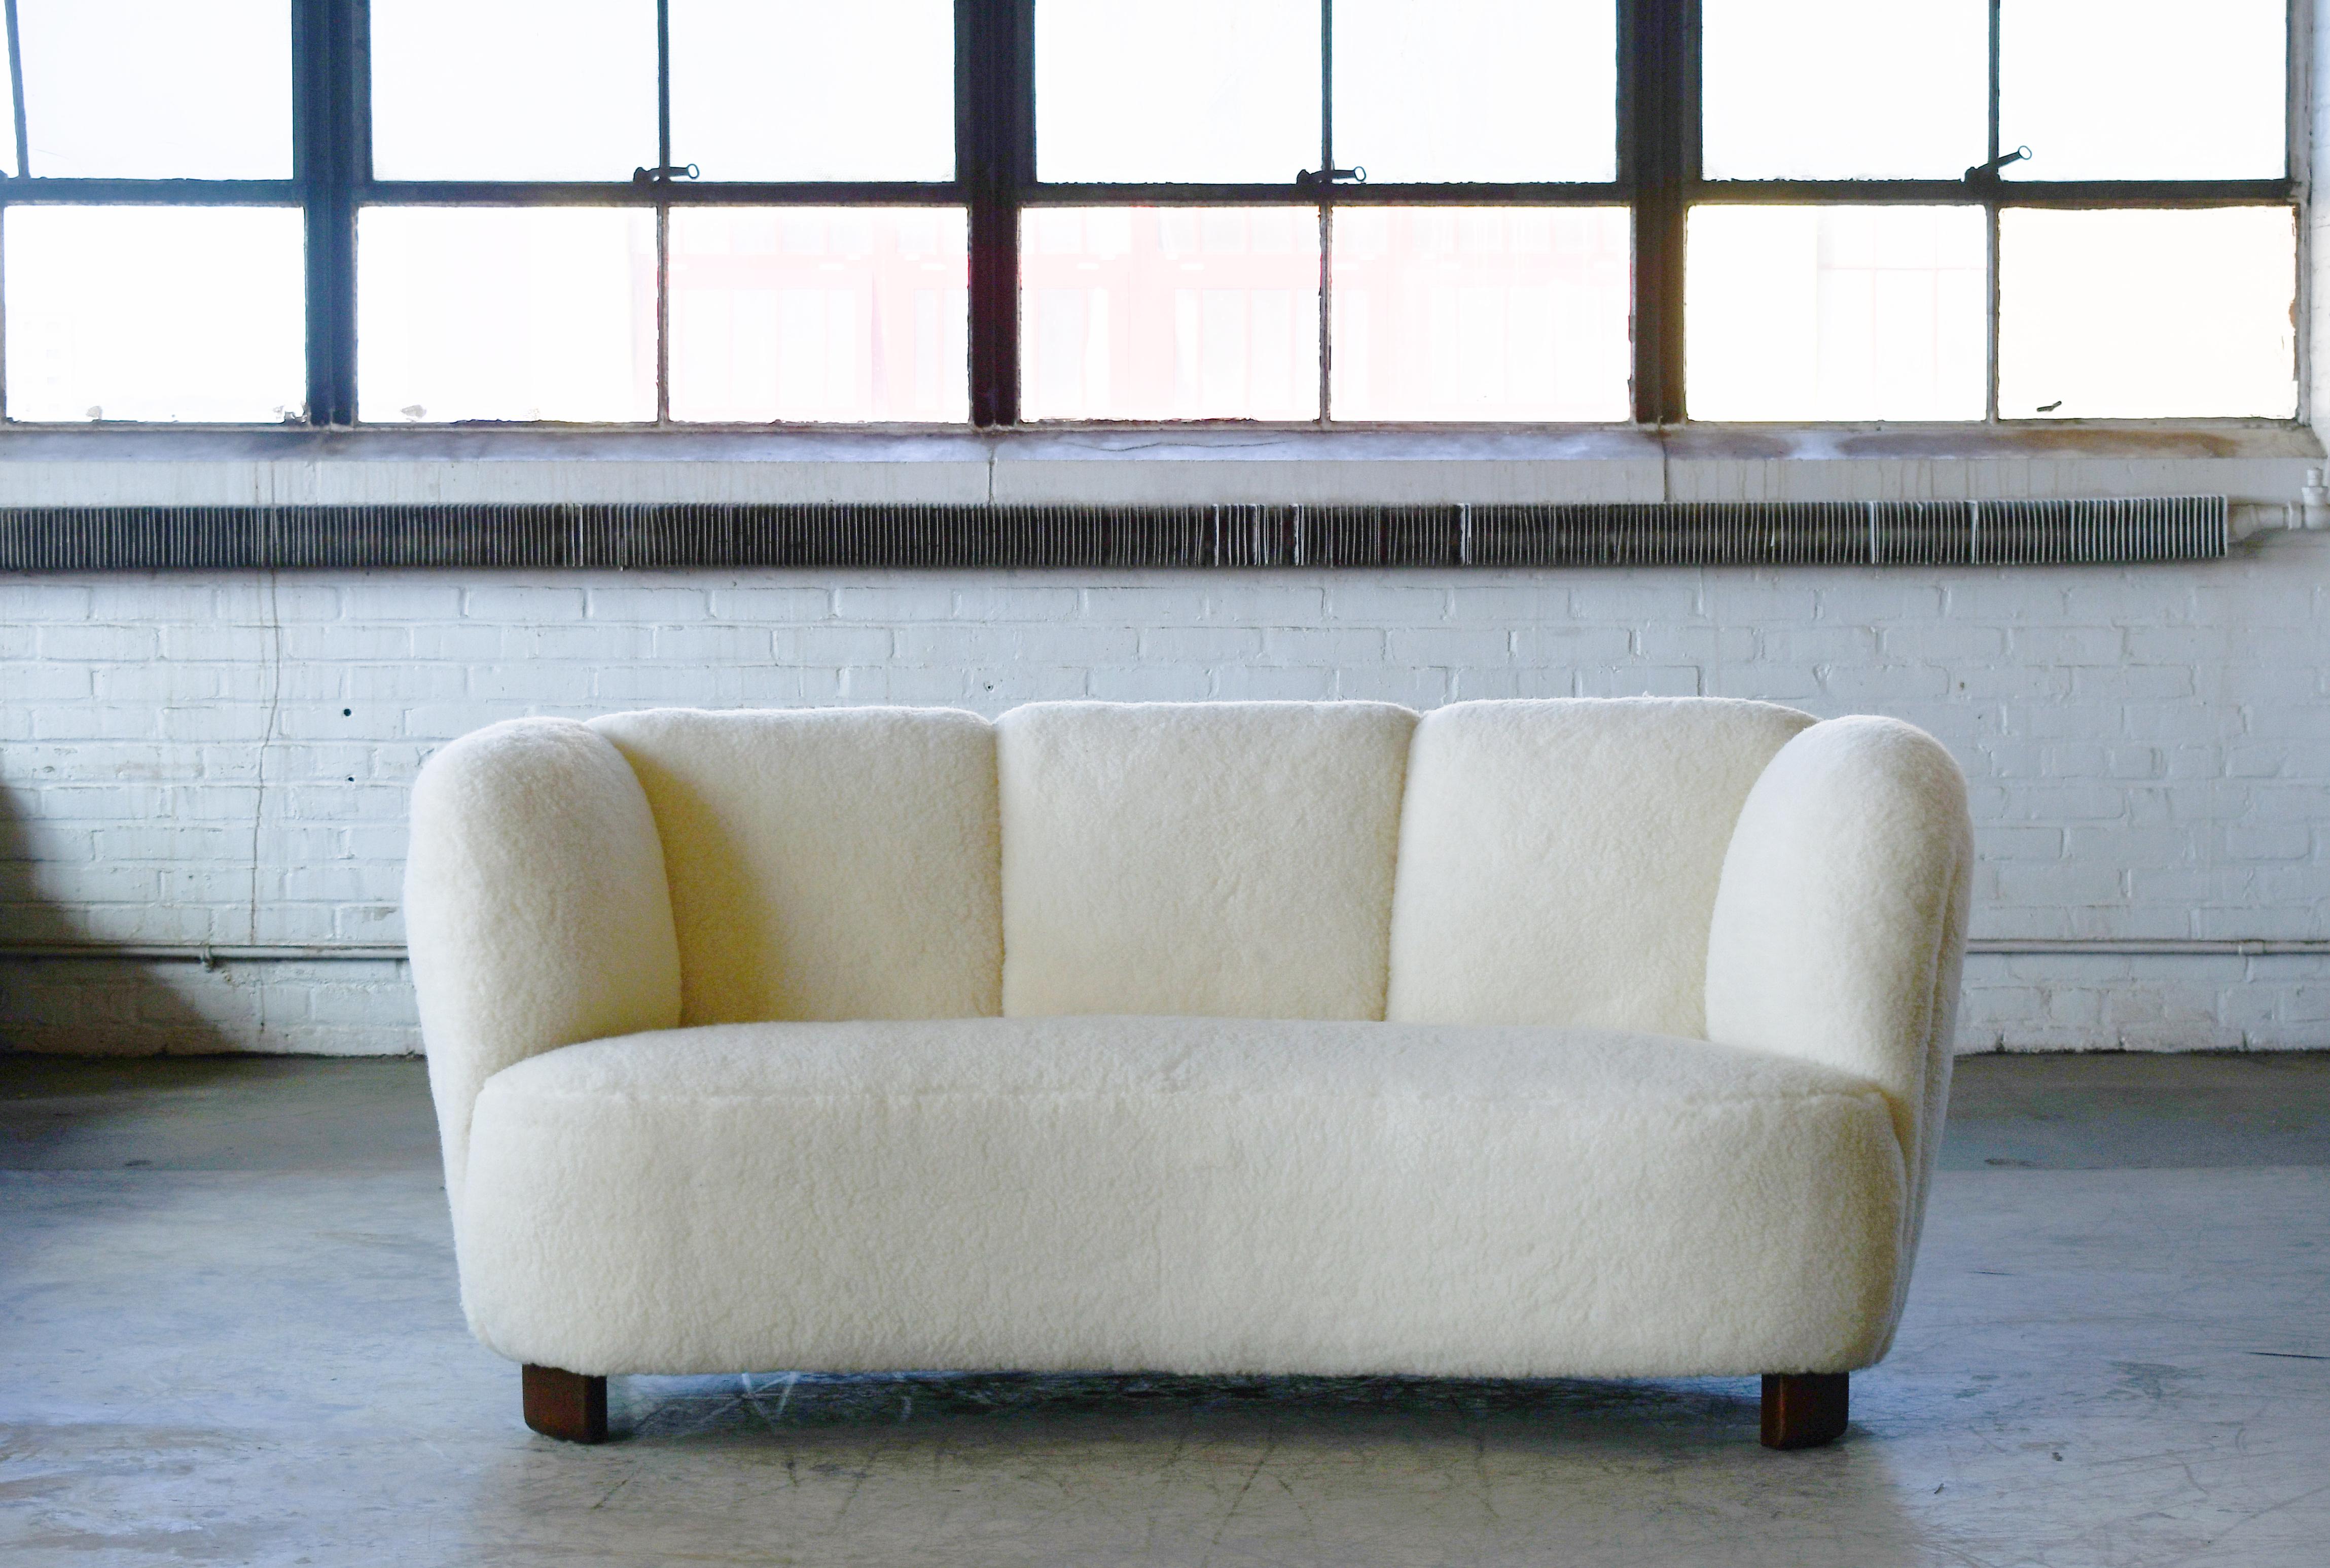 Bananenförmiges, geschwungenes Zweisitzer-Sofa oder -Liegesofa im Stil von Viggo Boesen, hergestellt in Dänemark in den 1940er Jahren. Dieses Sofa setzt in jedem Raum einen starken Akzent. Schöne runde Linien und ikonische Blockfüße, die man